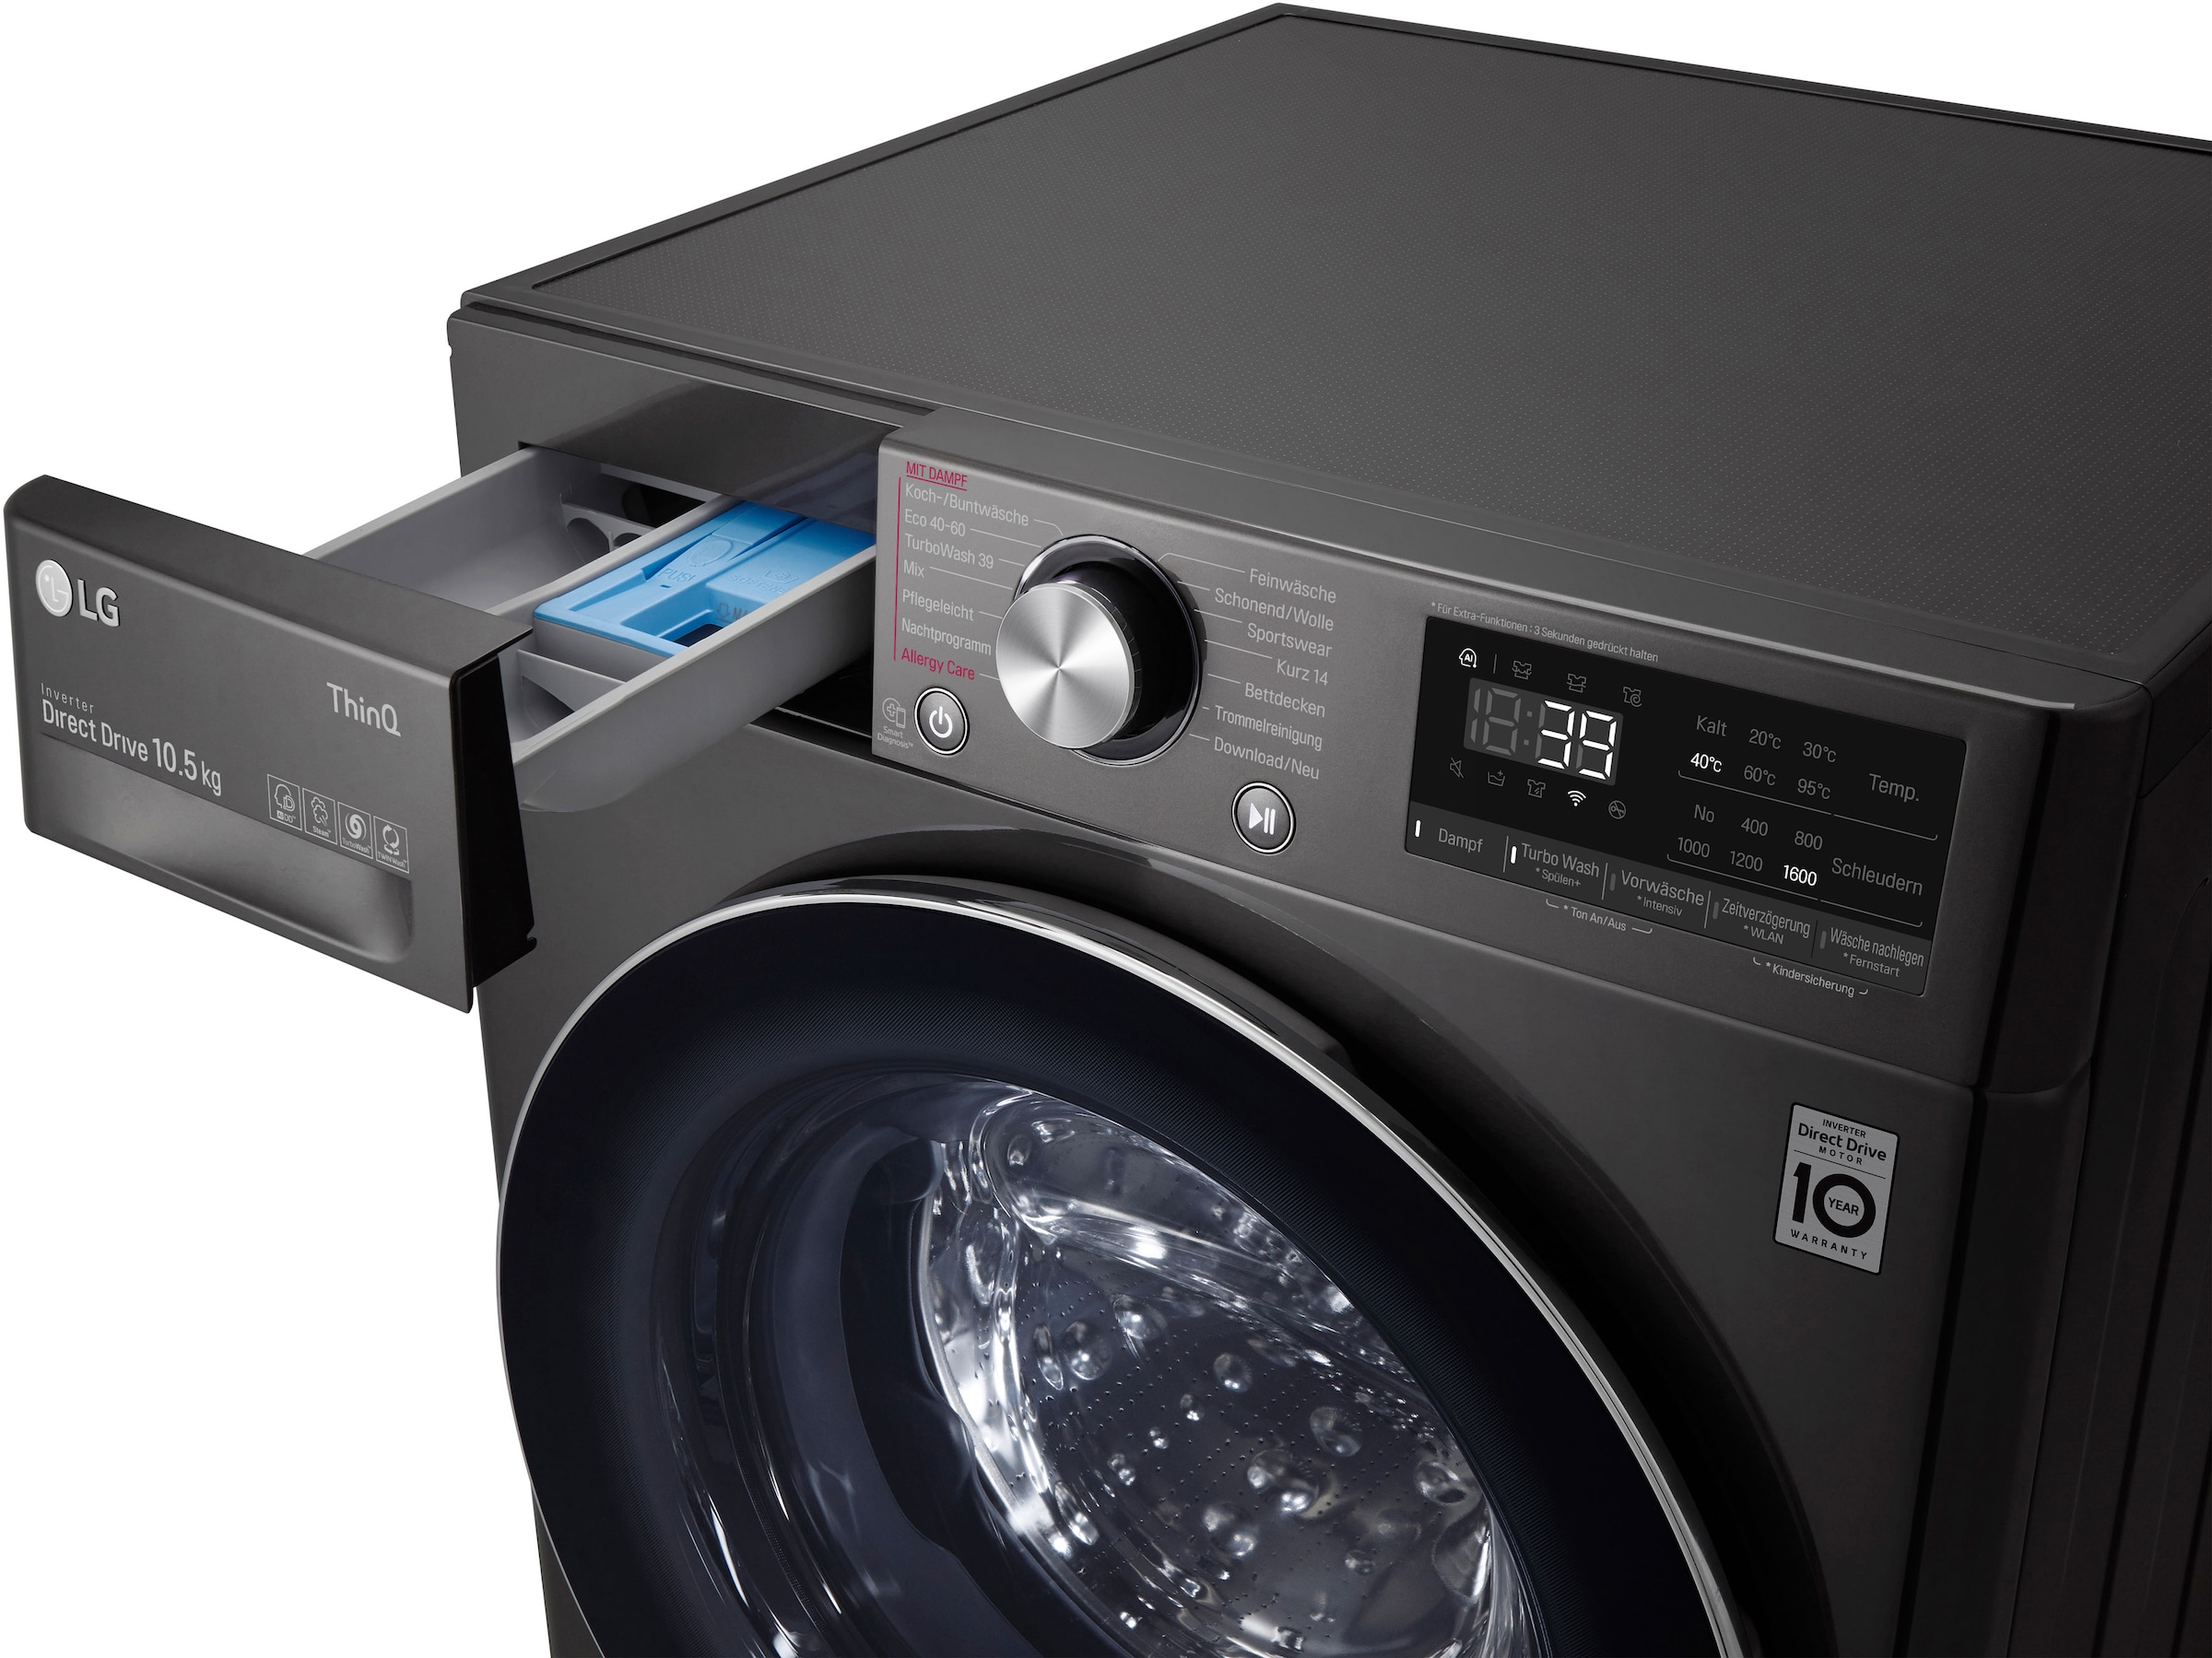 in - Waschmaschine 39 kg, OTTO 1600 im Online TurboWash® Minuten Waschen 10,5 LG F6WV710P2S, nur »F6WV710P2S«, Shop U/min,